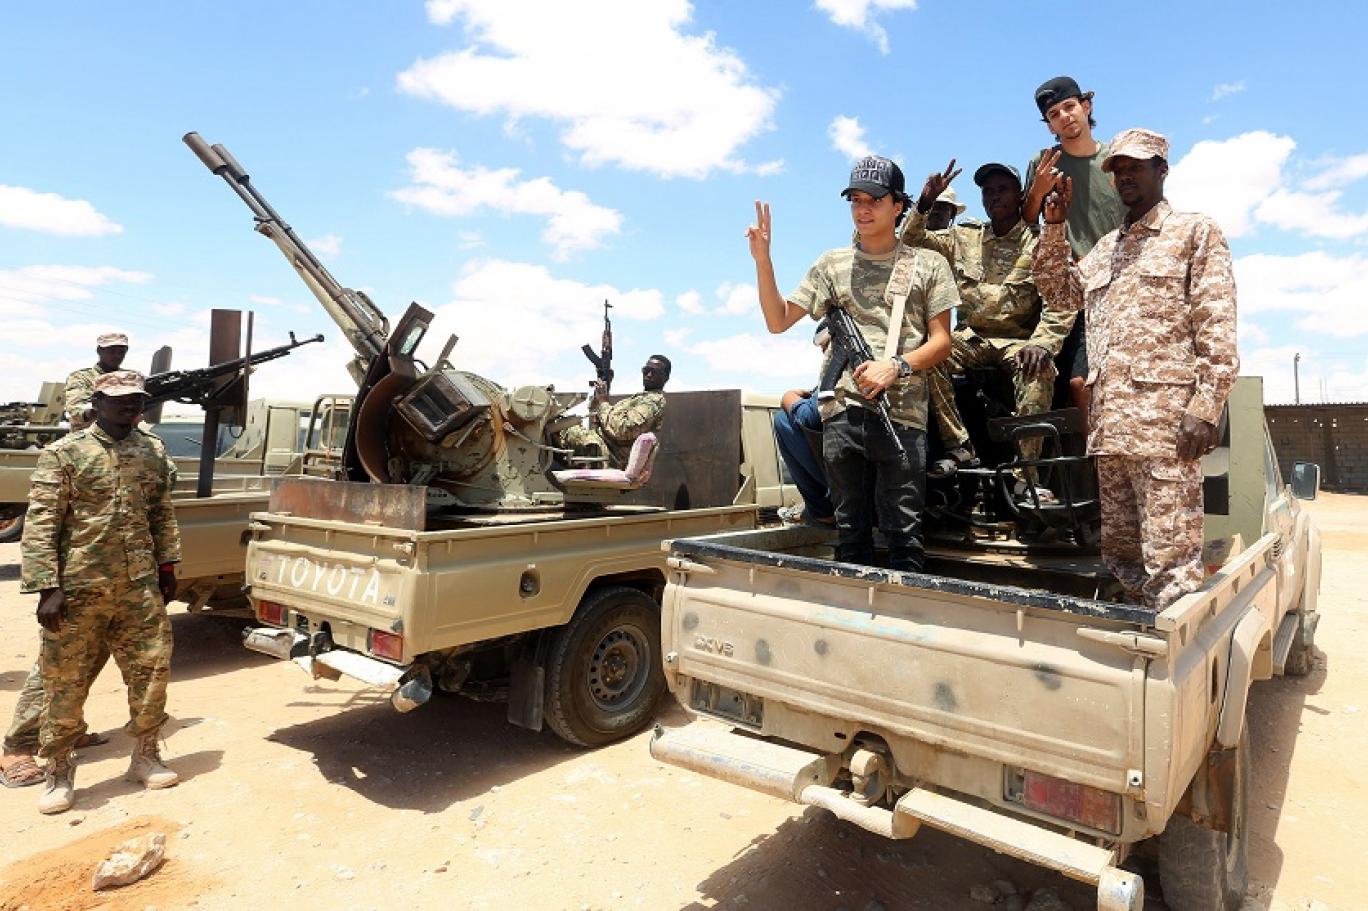 احتداد الصراع في ليبيا اشتباكات خطيرة تعد هي الأقوى